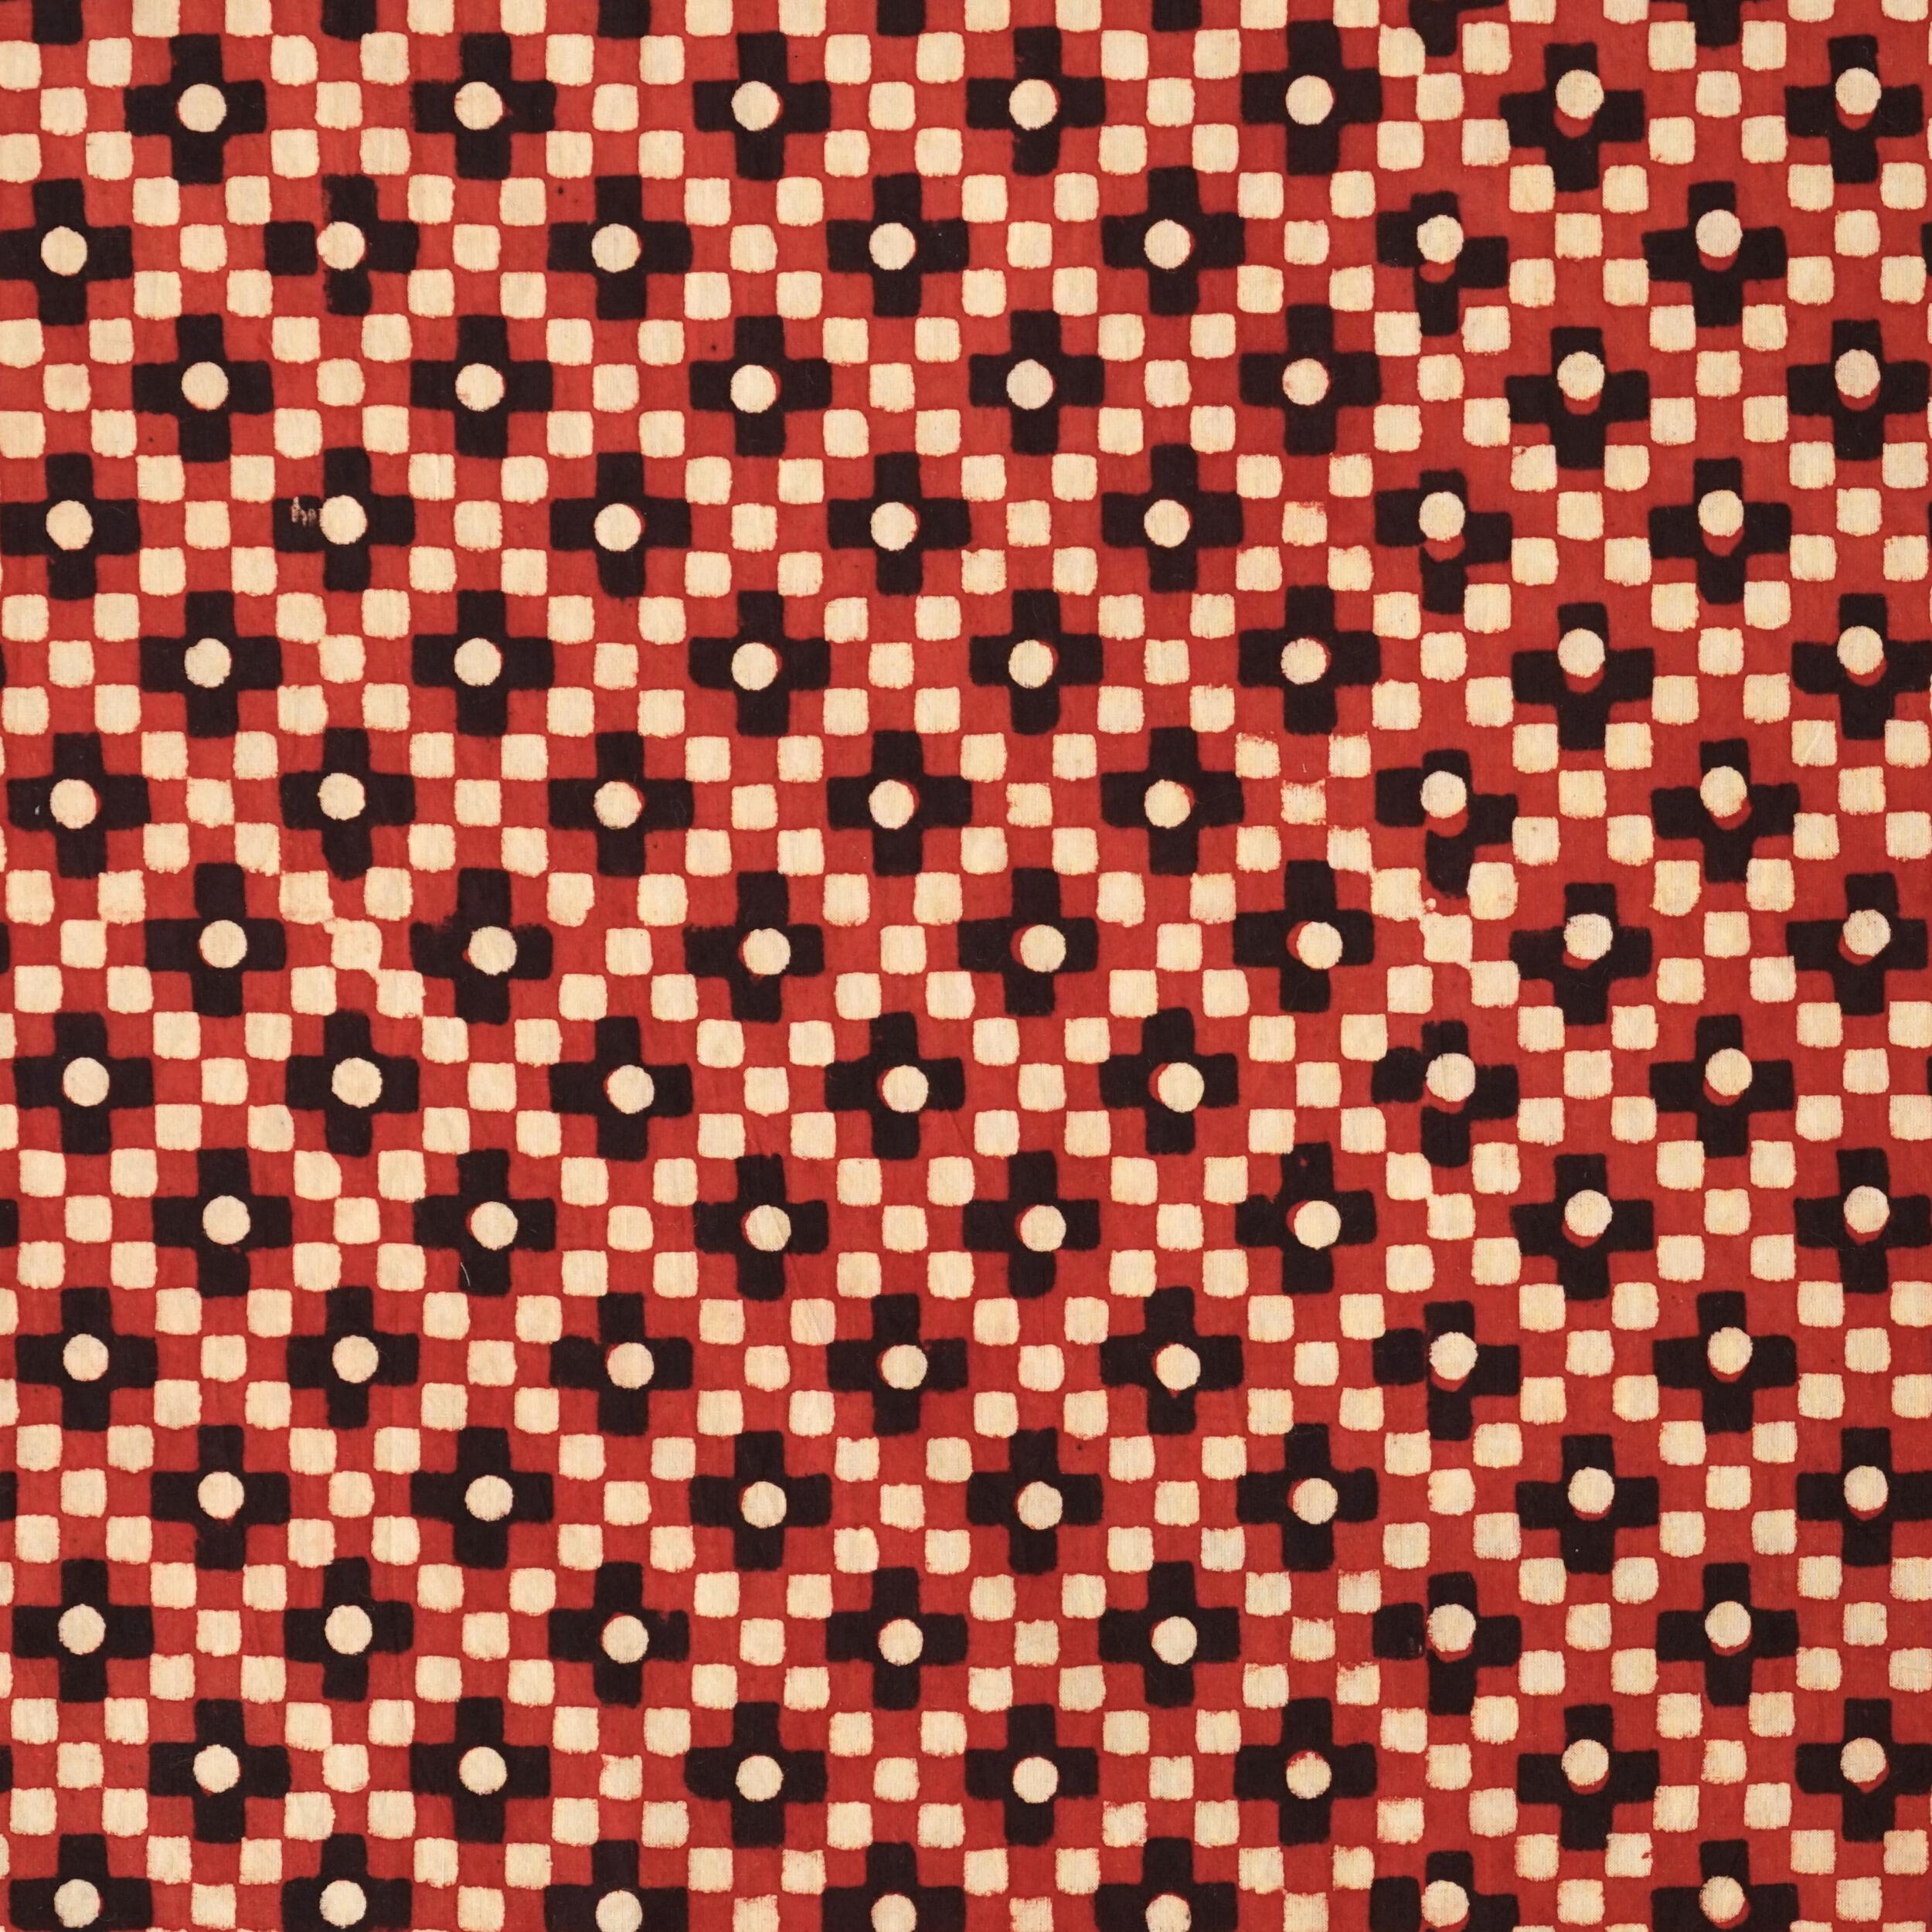 SIK04 - Hand Block-Printed Cotton - Mosaic Design - Red, Yellow & Black Dye - Flat